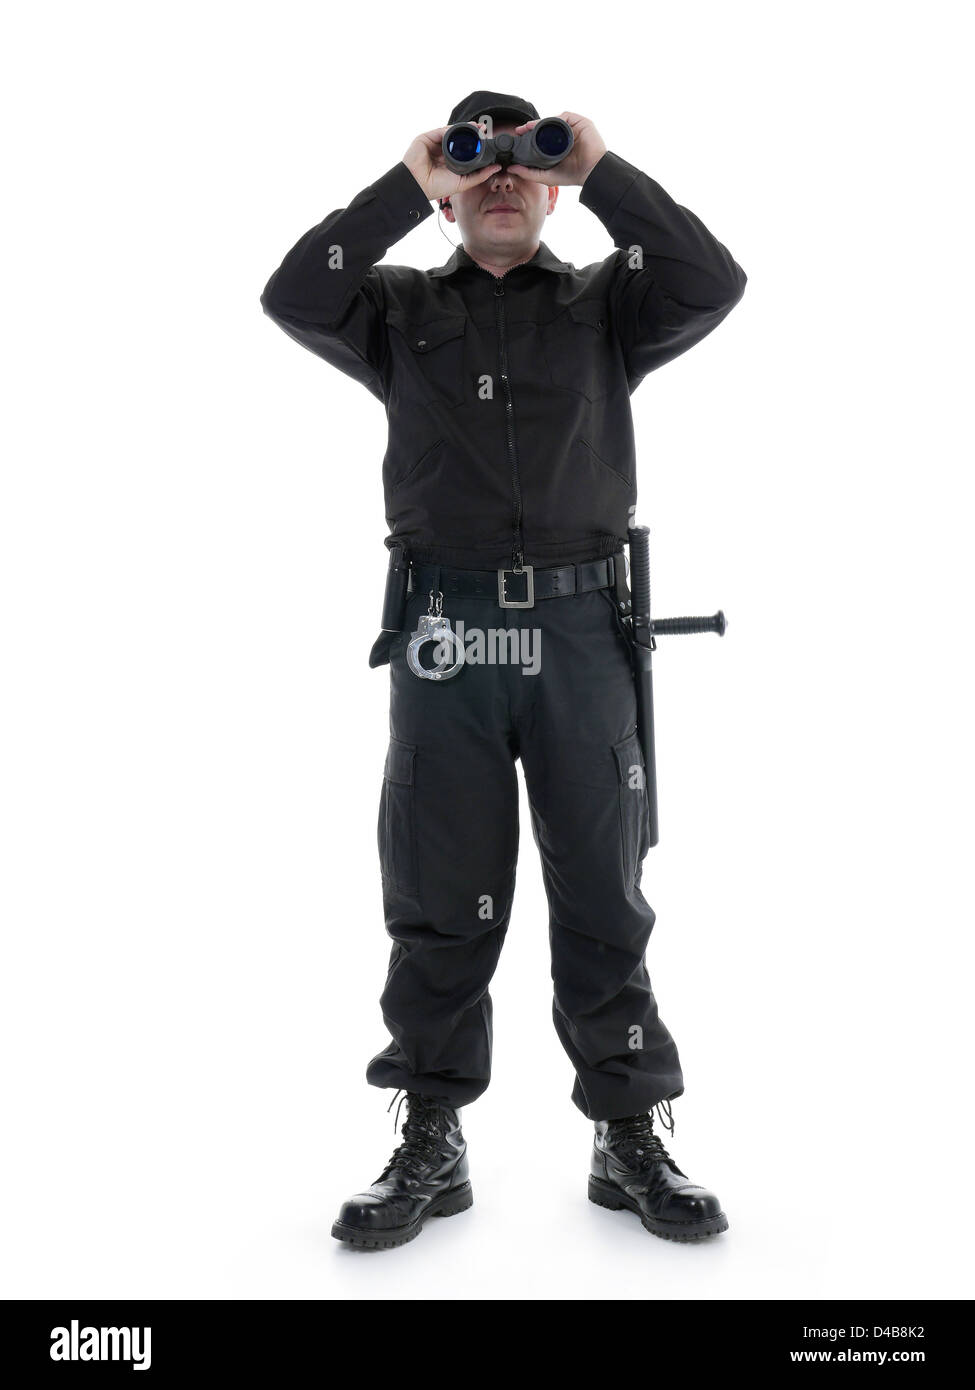 Homme portant uniforme de sécurité noir regardant à travers des jumelles, shot on white Banque D'Images